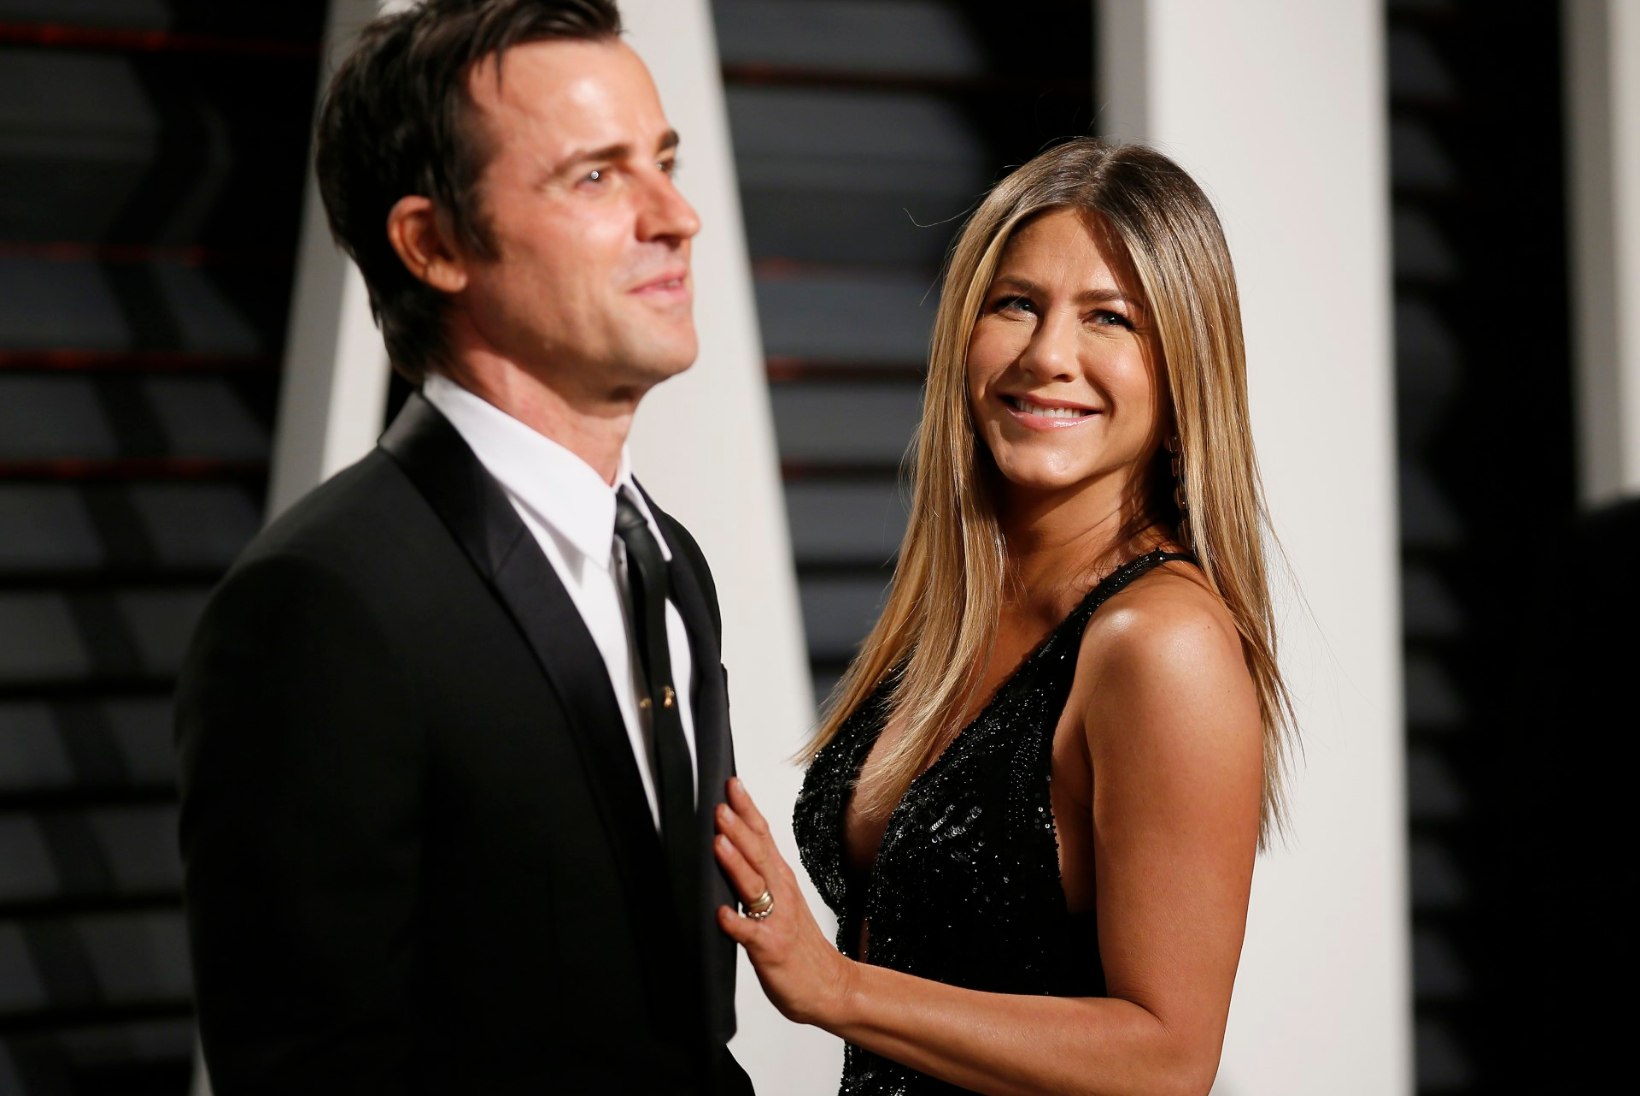 Jennifer Aniston ja Justin Theroux otsustasid juba mitu kuud tagasi lahku minna